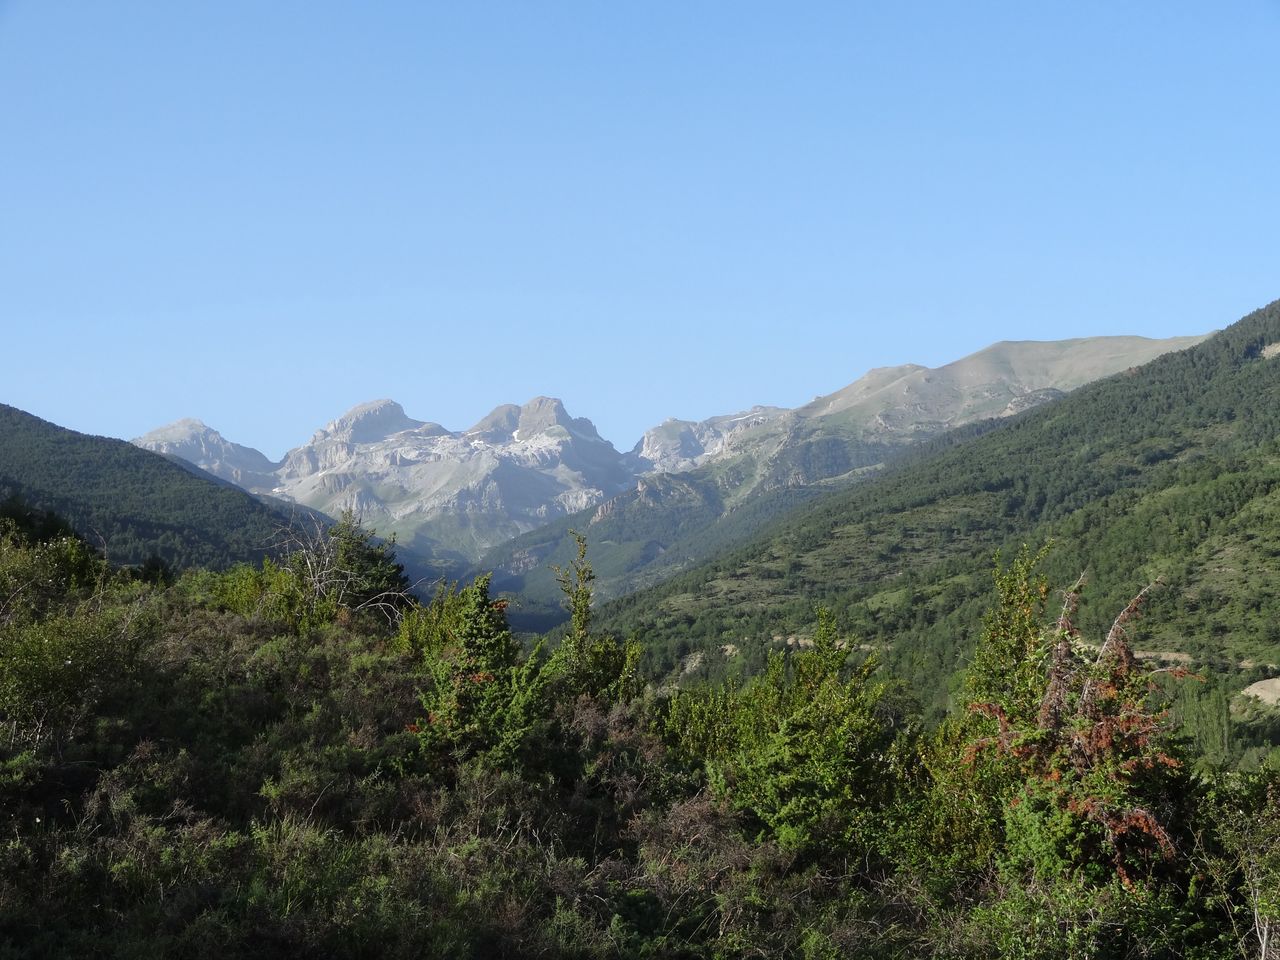 British tourist found deceased near Pyrenees summit